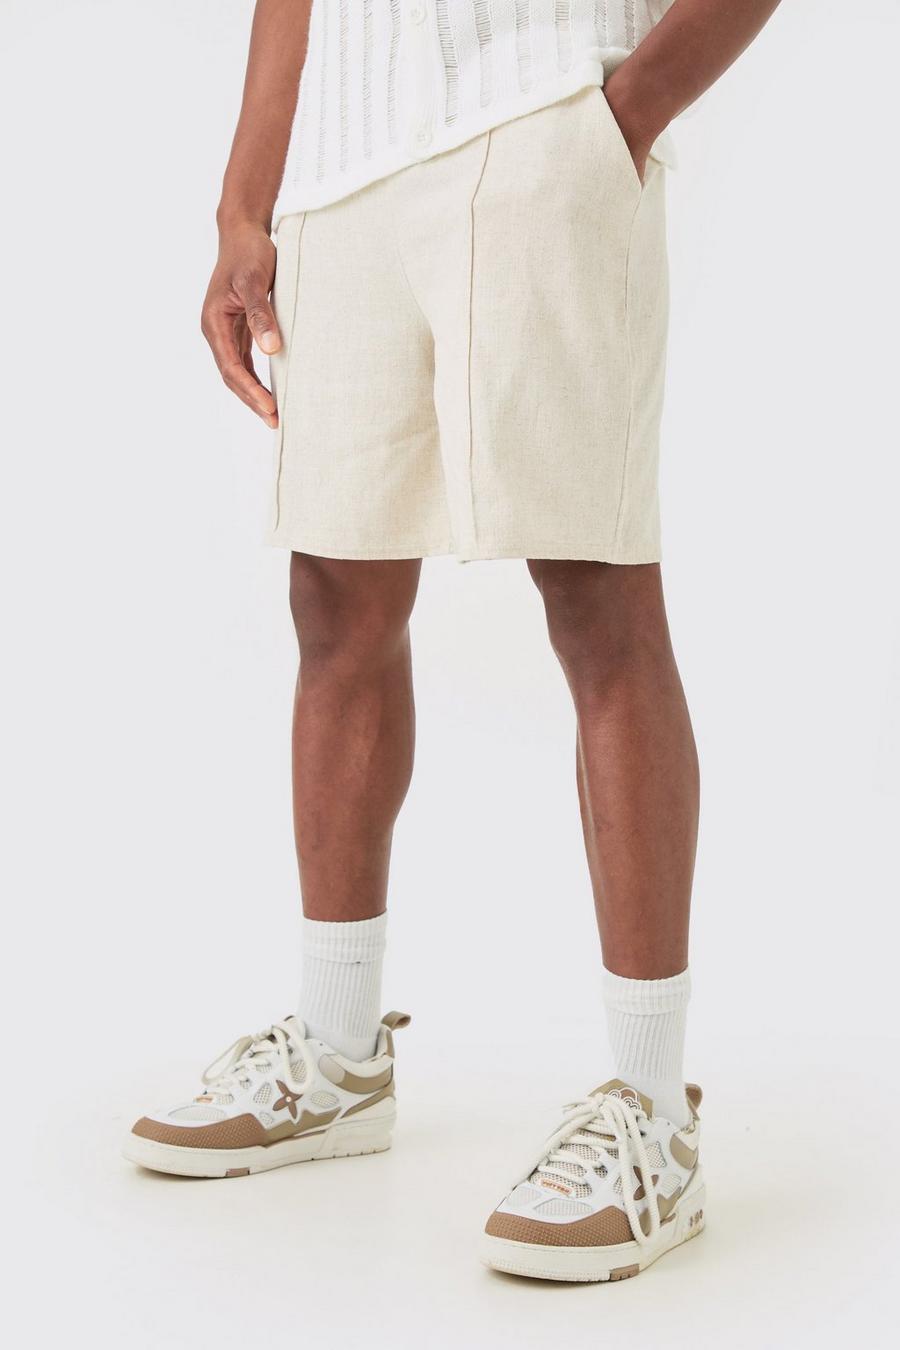 Lockere Shorts in Leinenoptik mit elastischem Bund, Natural